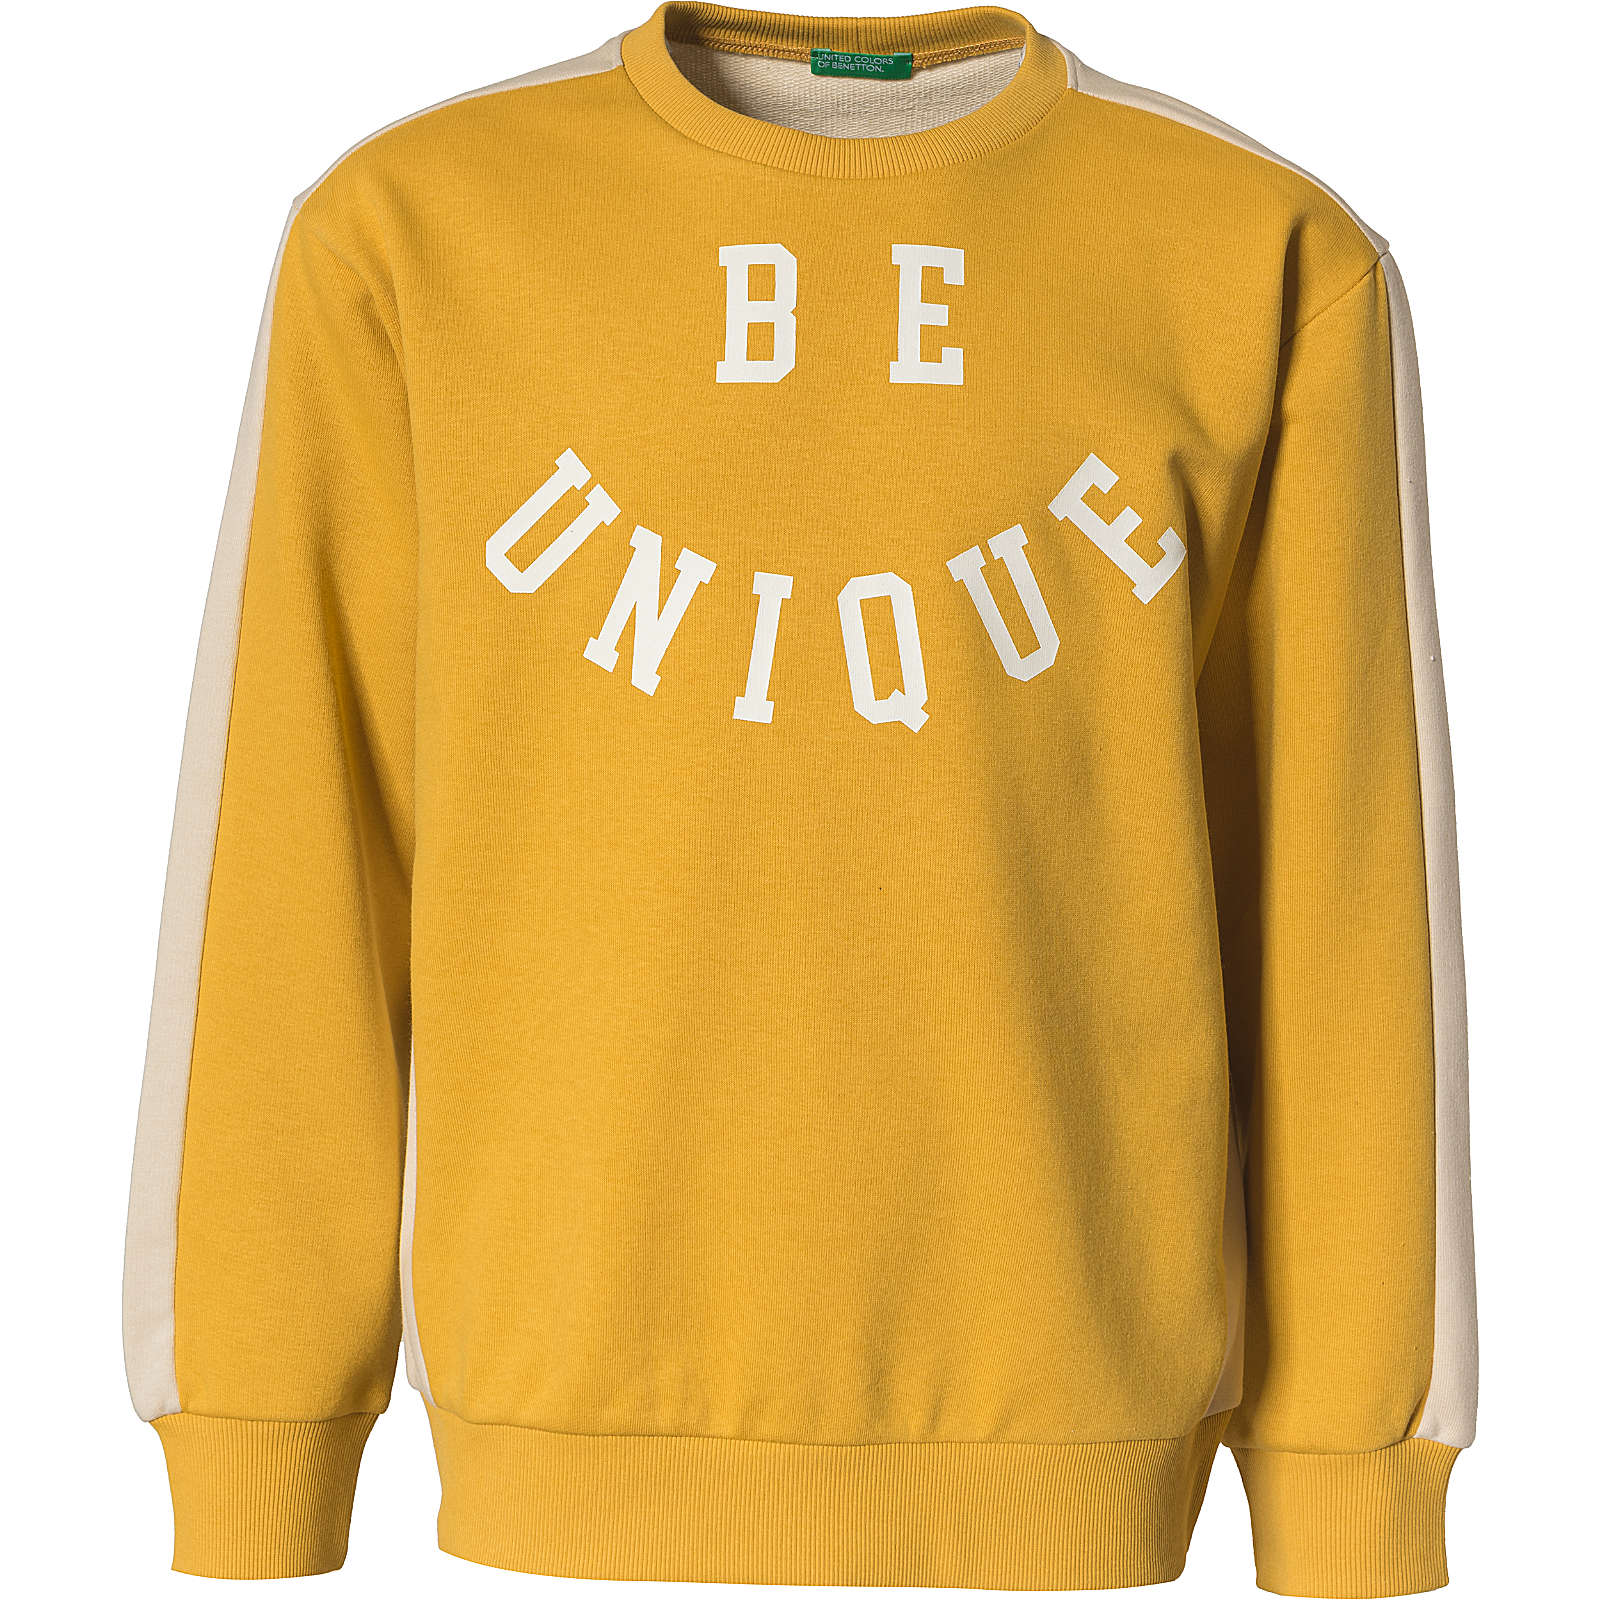 United Colors of Benetton Sweatshirt für Jungen gelb Junge Gr. 122